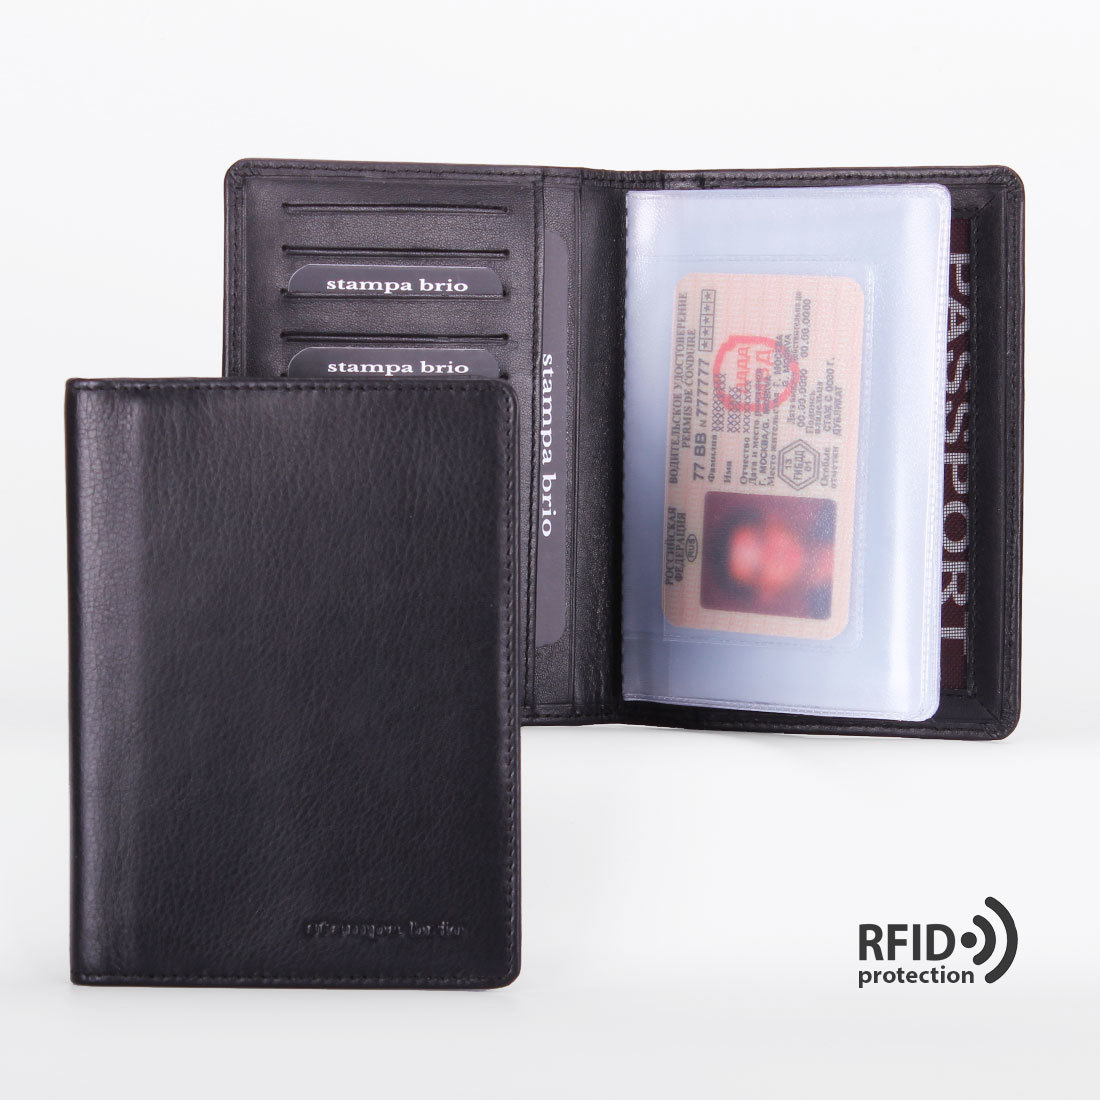 101 R - Обложка для документов с RFID защитой, Stampa Brio